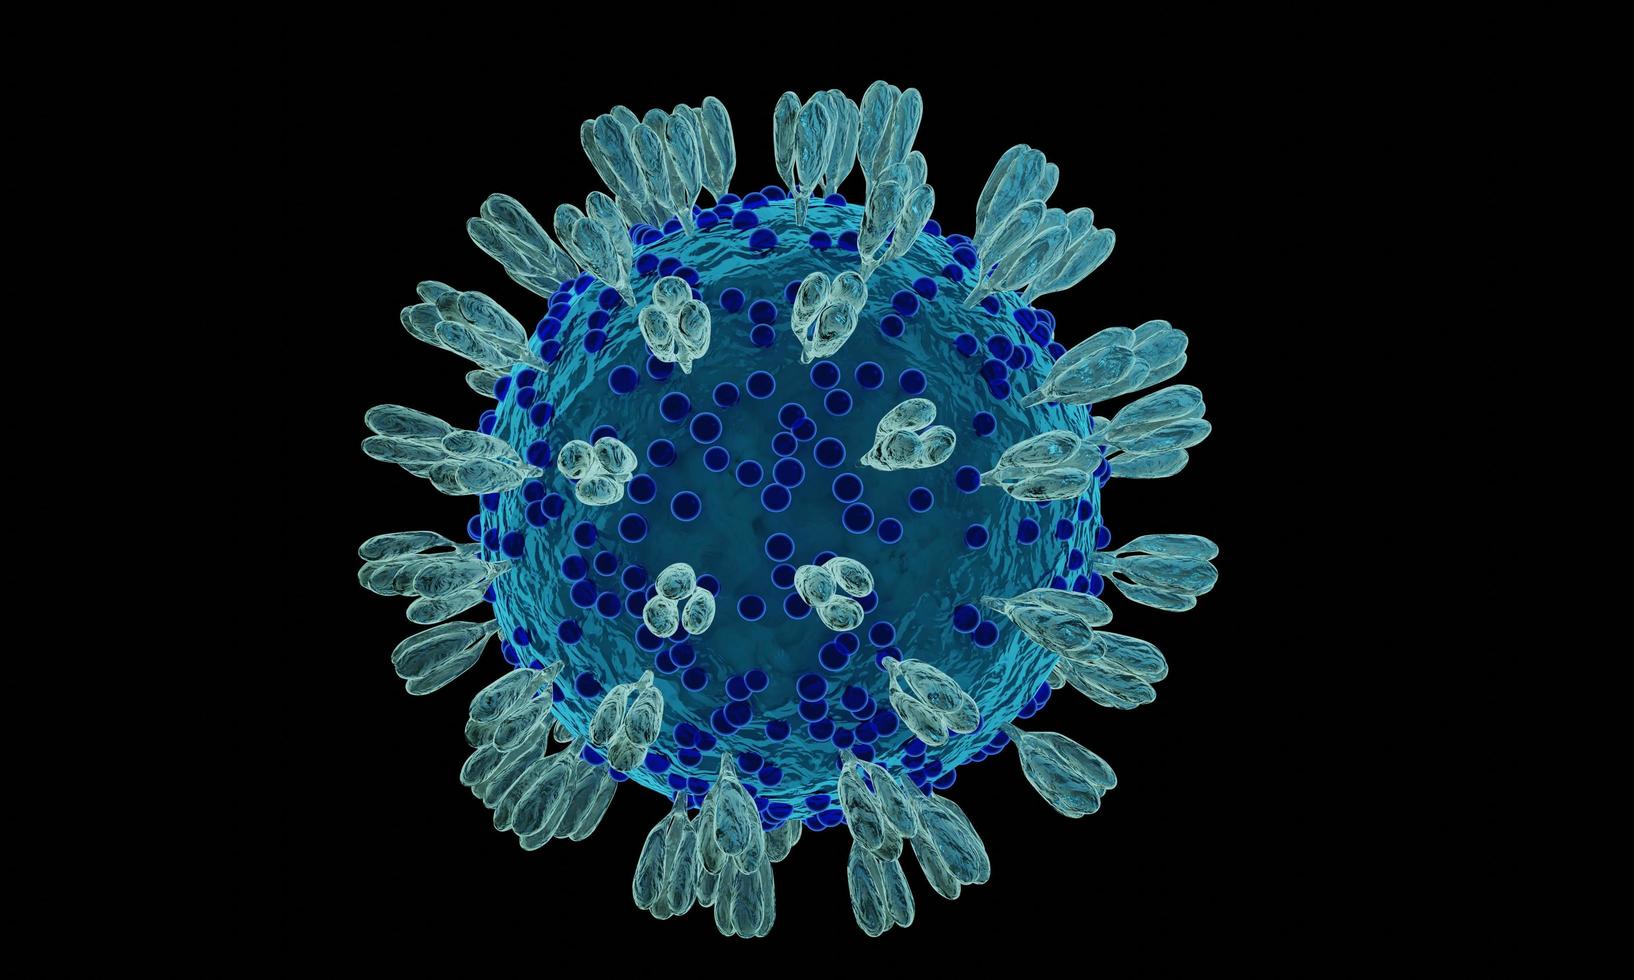 coronavirus 2019-ncov novo conceito de célula de coronavírus. casos perigosos de cepa de gripe como uma pandemia. vírus de microscópio close-up. renderização 3D. foto